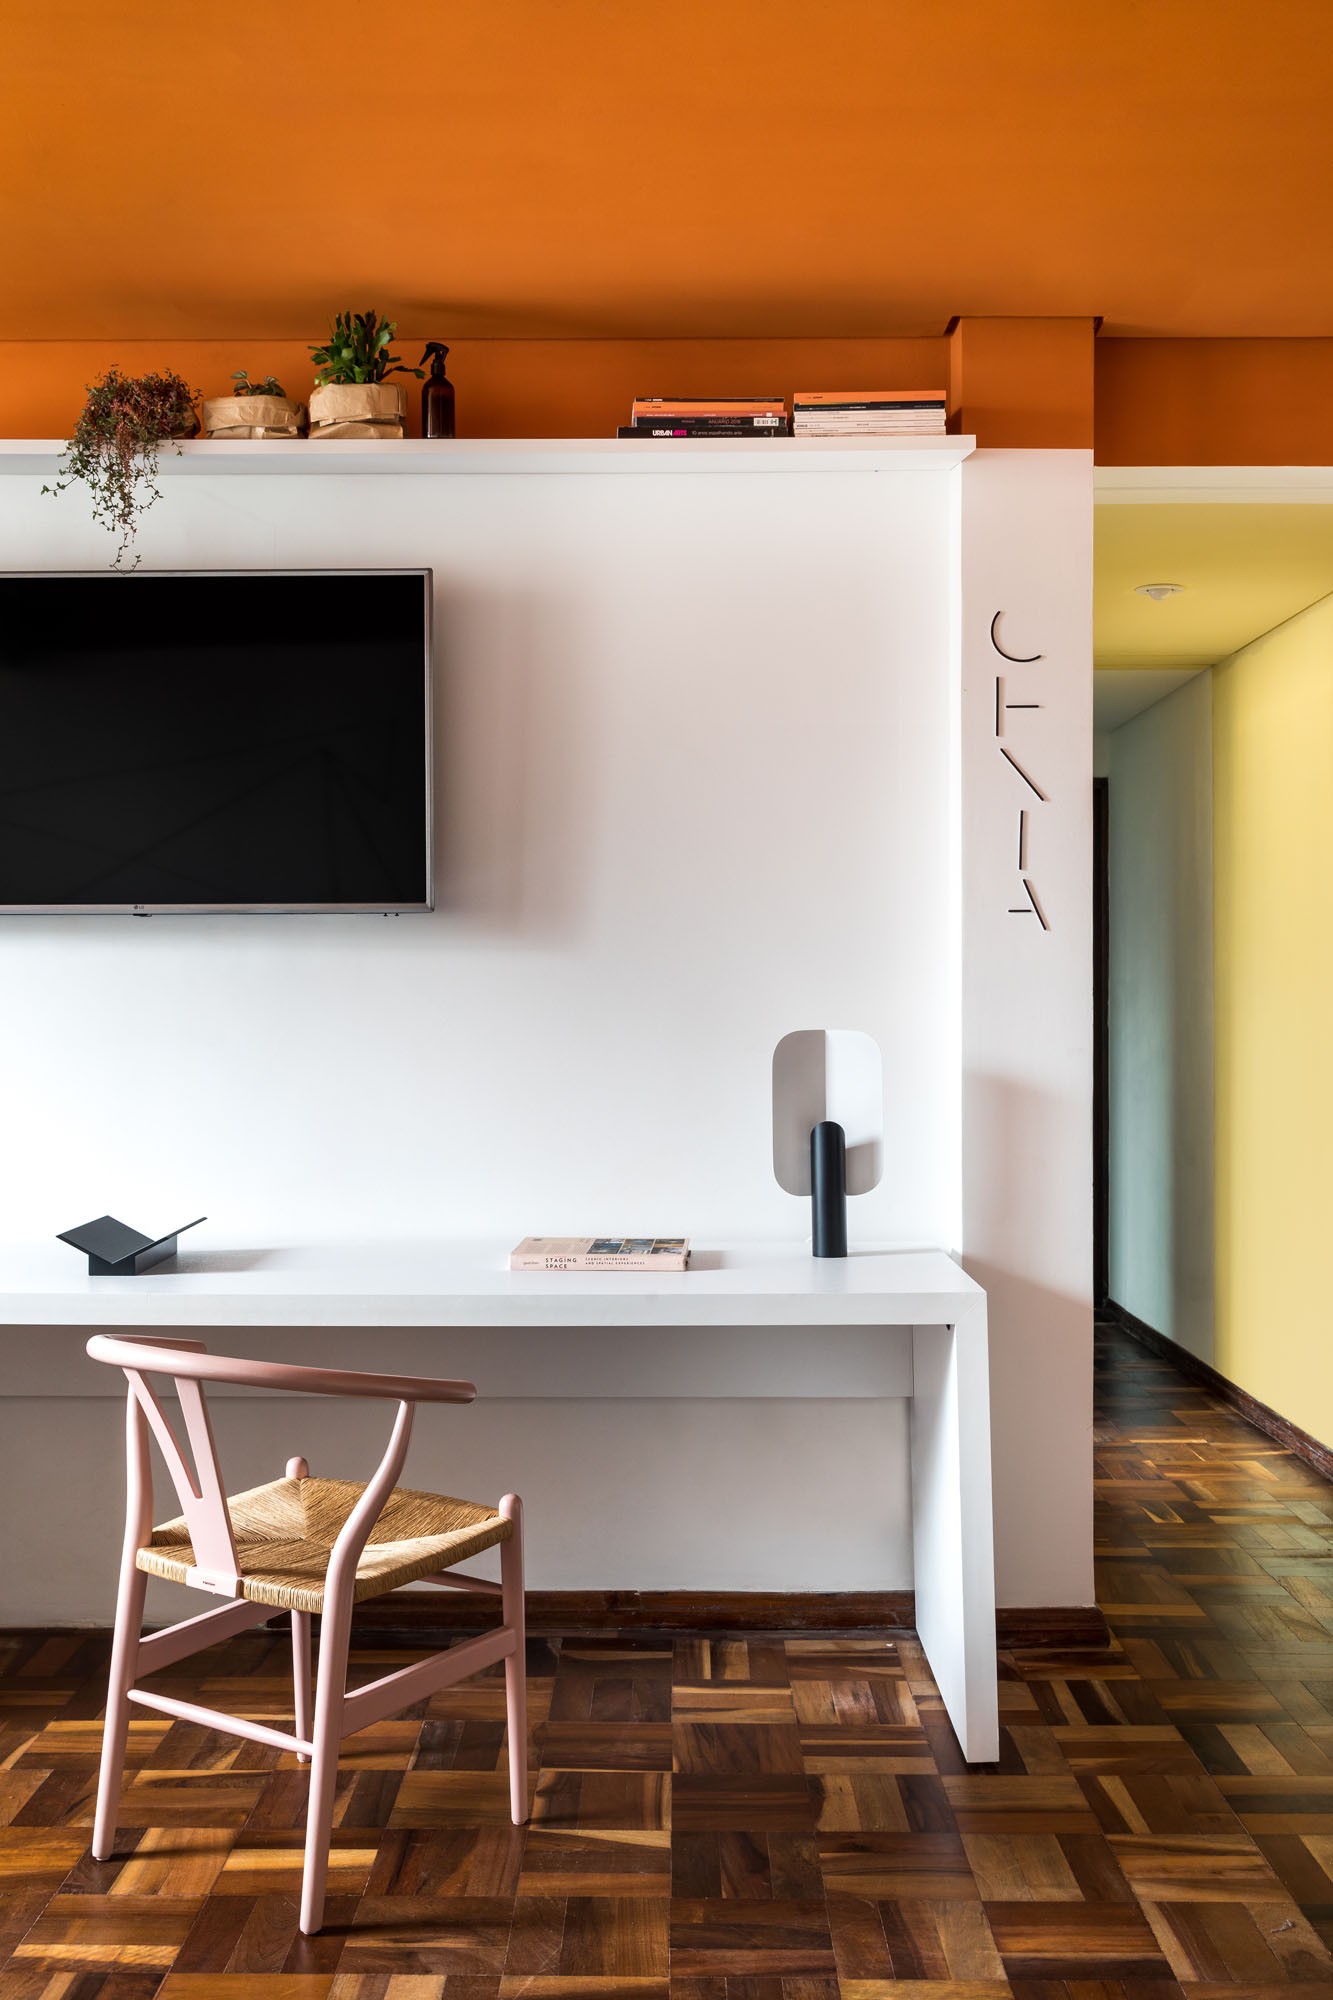 Décor do dia: sala de estar com teto colorido vira home office flexível (Foto: Eduardo Macarios)